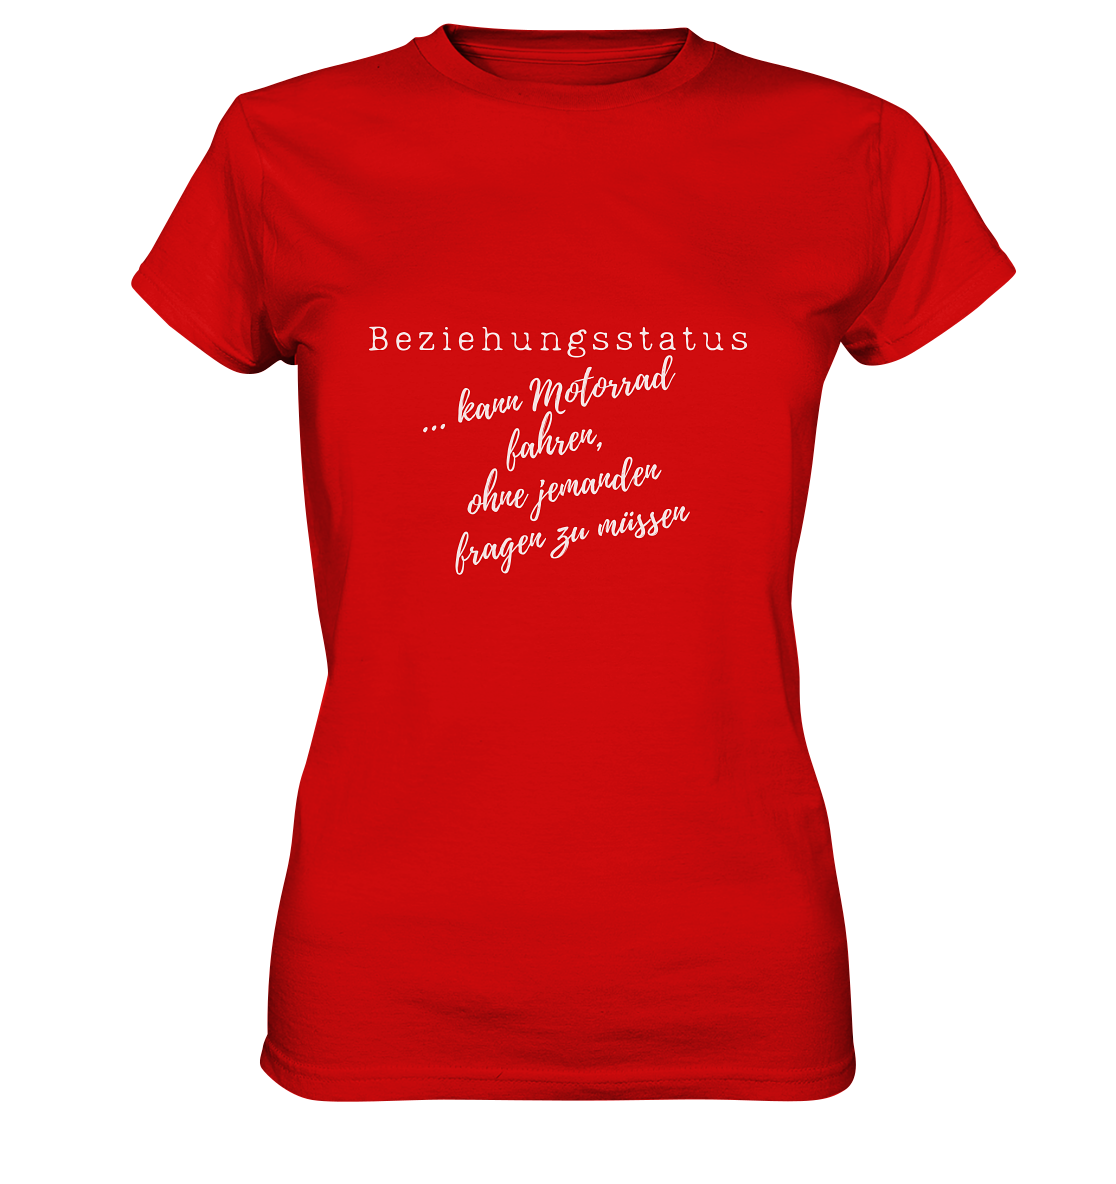 "Beziehungsstatus: Kann Motorrad fahren, ohne jemanden fragen zu müssen" | Damen-Shirt mit Motorradspruch in hellem Design, rot